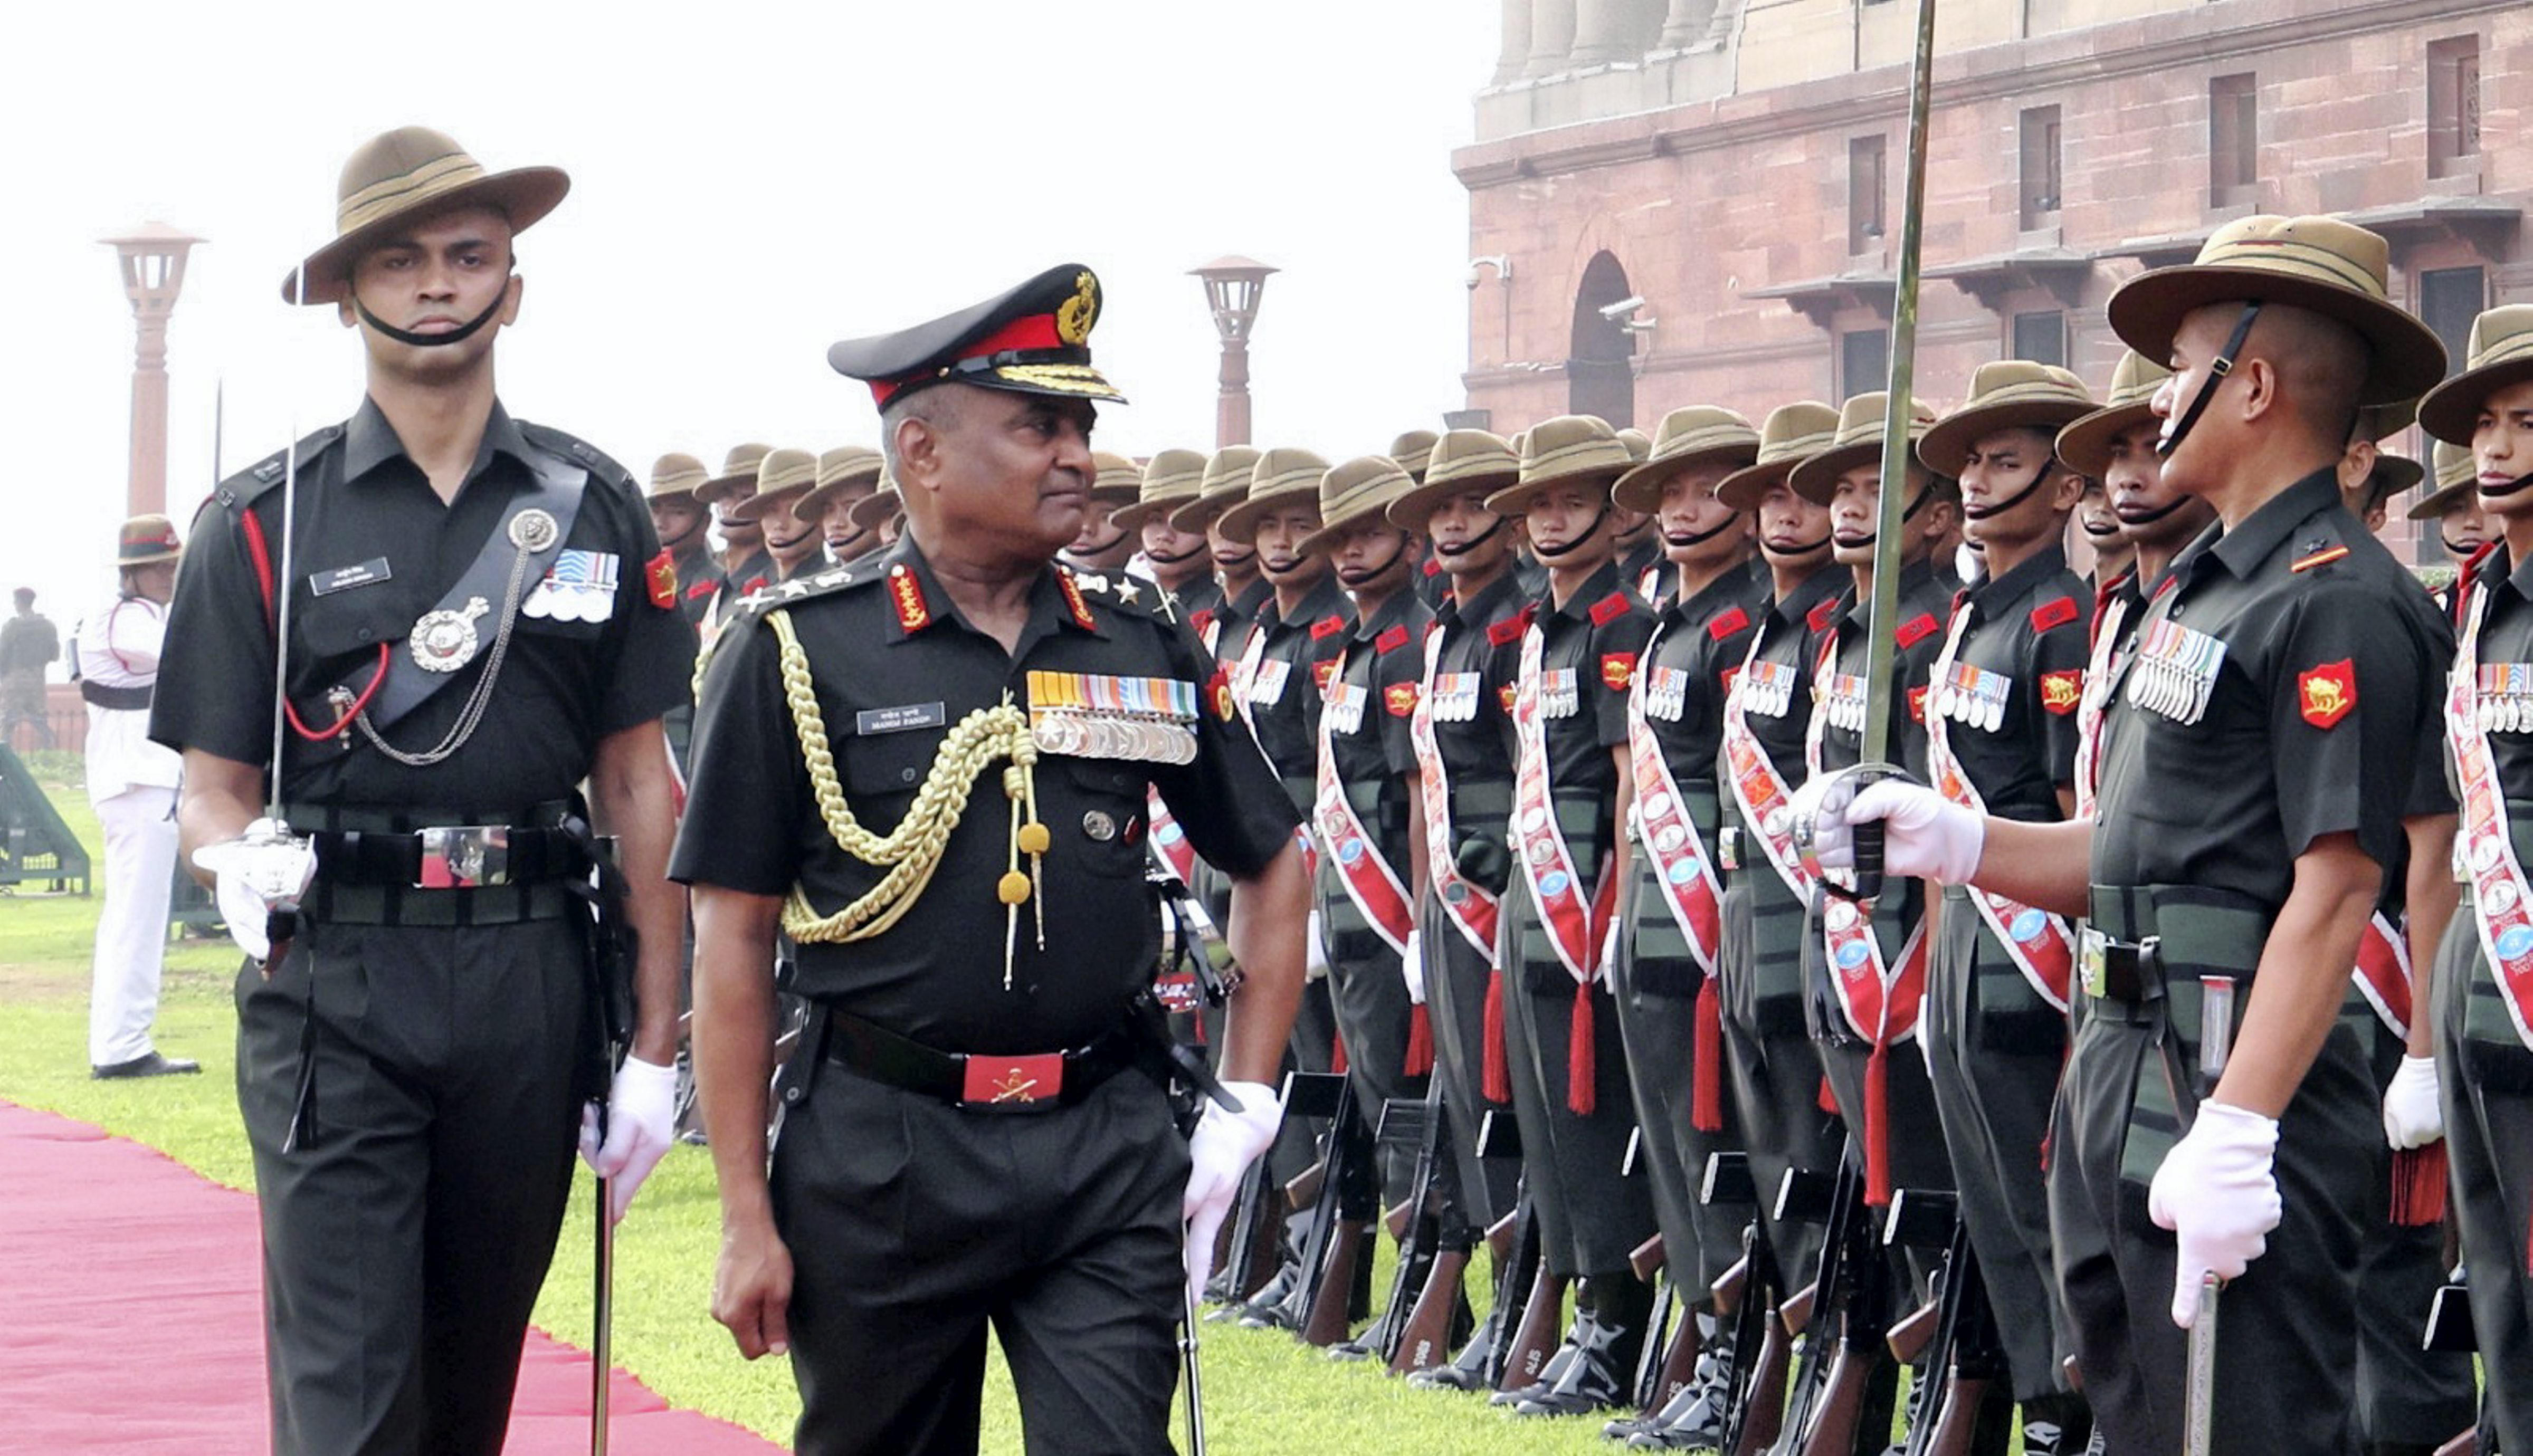 जनरल उपेंद्र द्विवेदी ने नए सेना प्रमुख का पदभार संभाला, रिटायरमेंट से पहले जनरल मनोज पांडे को गार्ड ऑफ ऑनर